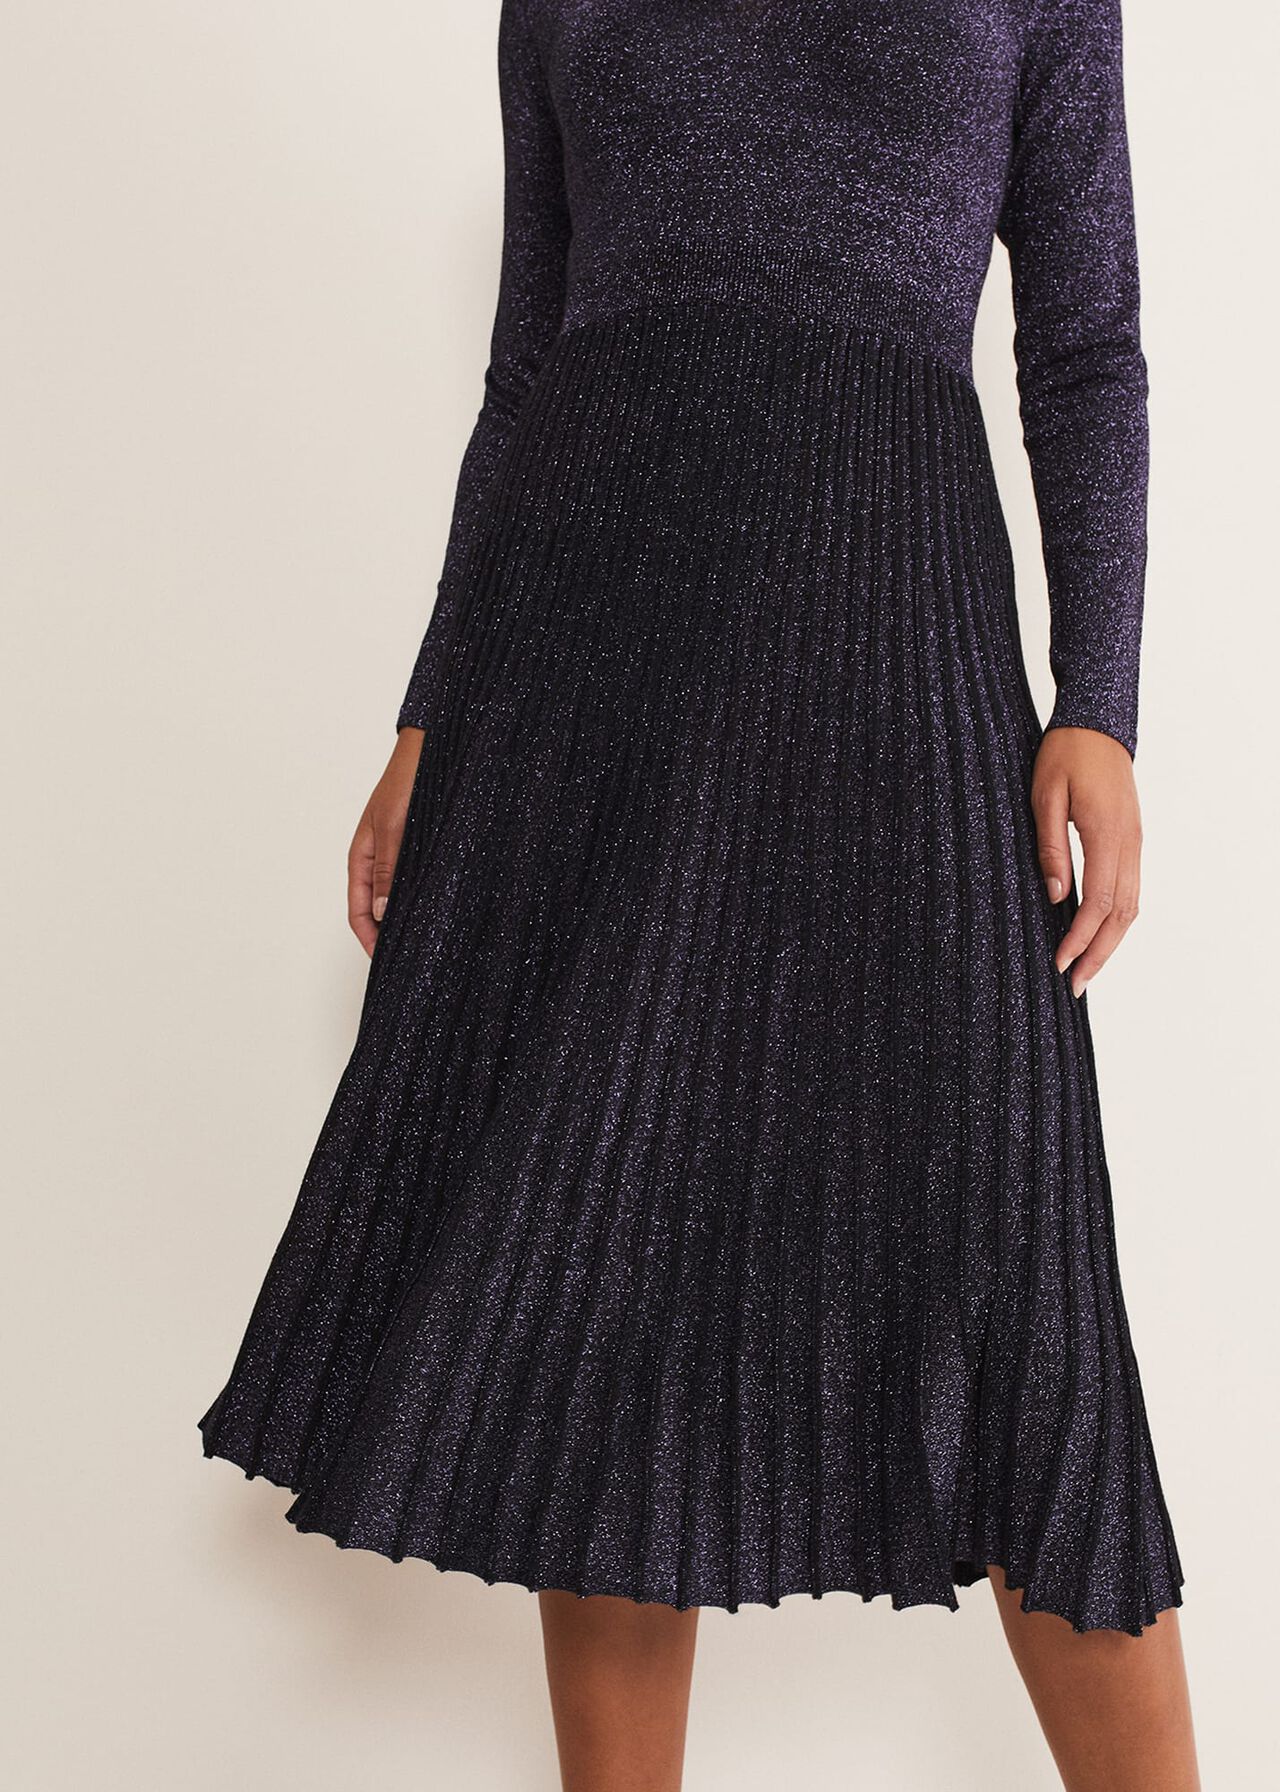 Jessamine Shimmer Knit Dress